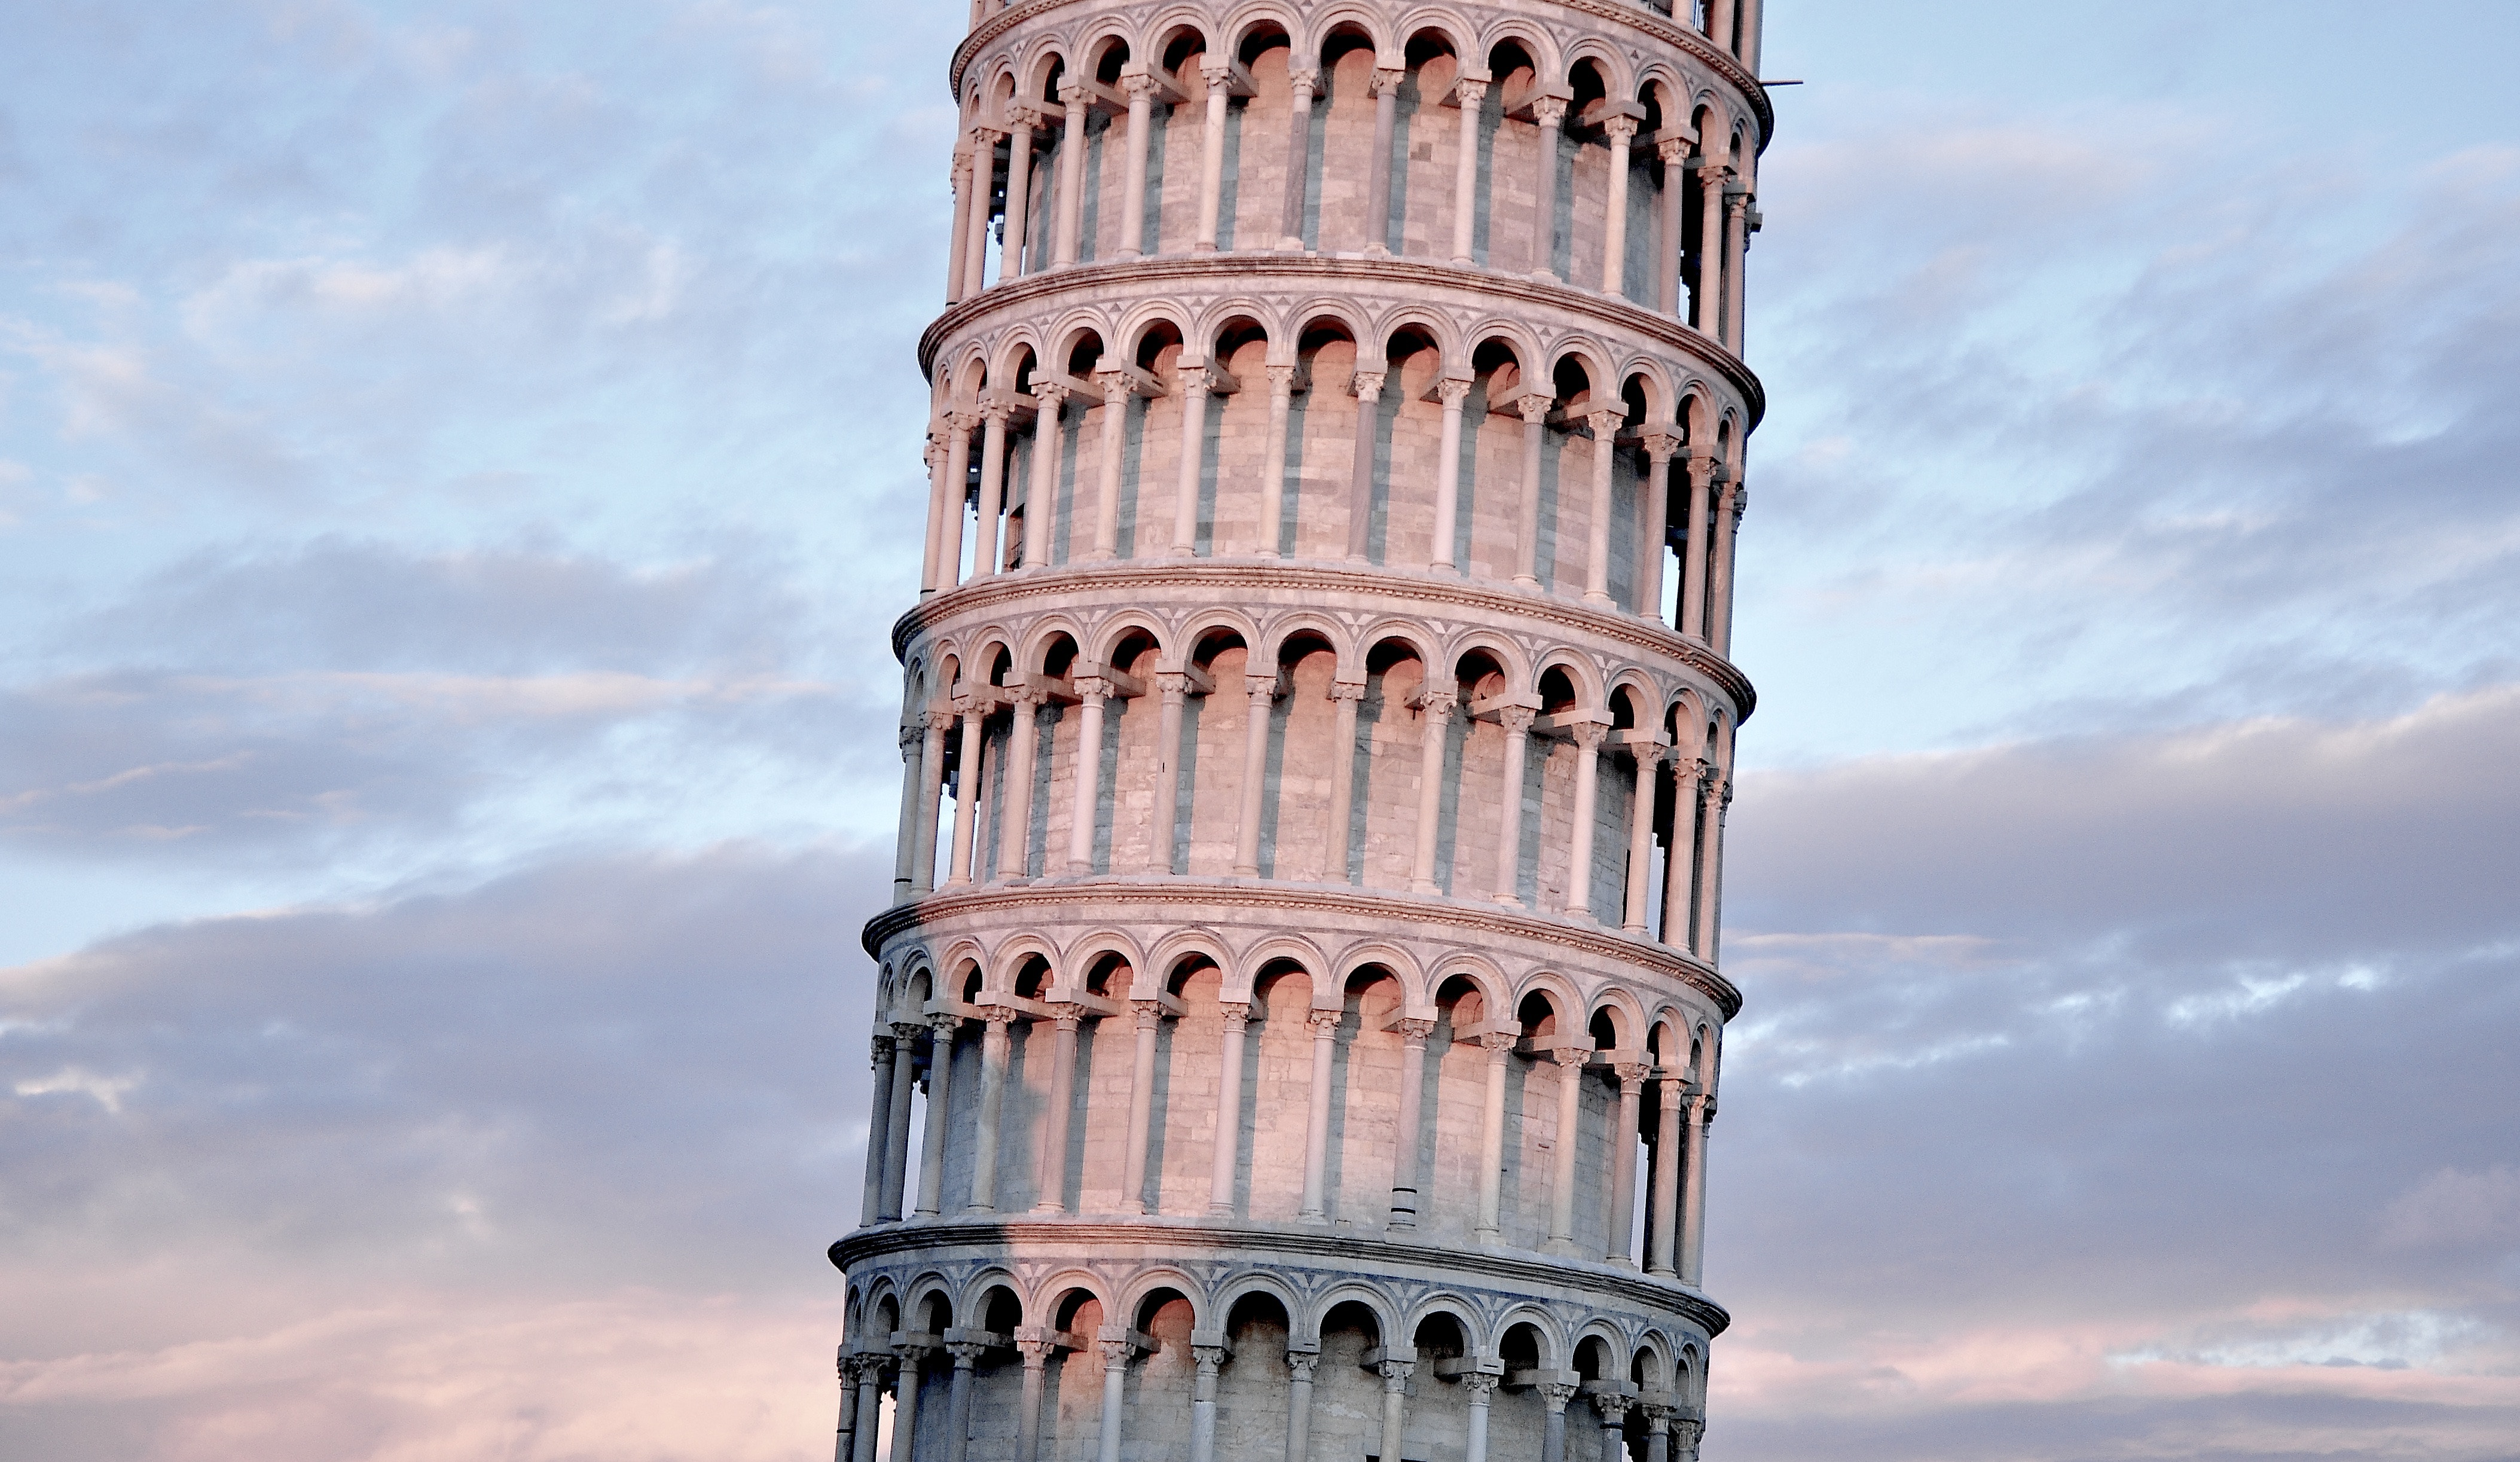 Eğik Pisa kulesi, İtalya'nın en ünlü yerlerinden biridir.  diğerlerini tahmin edebilir misin